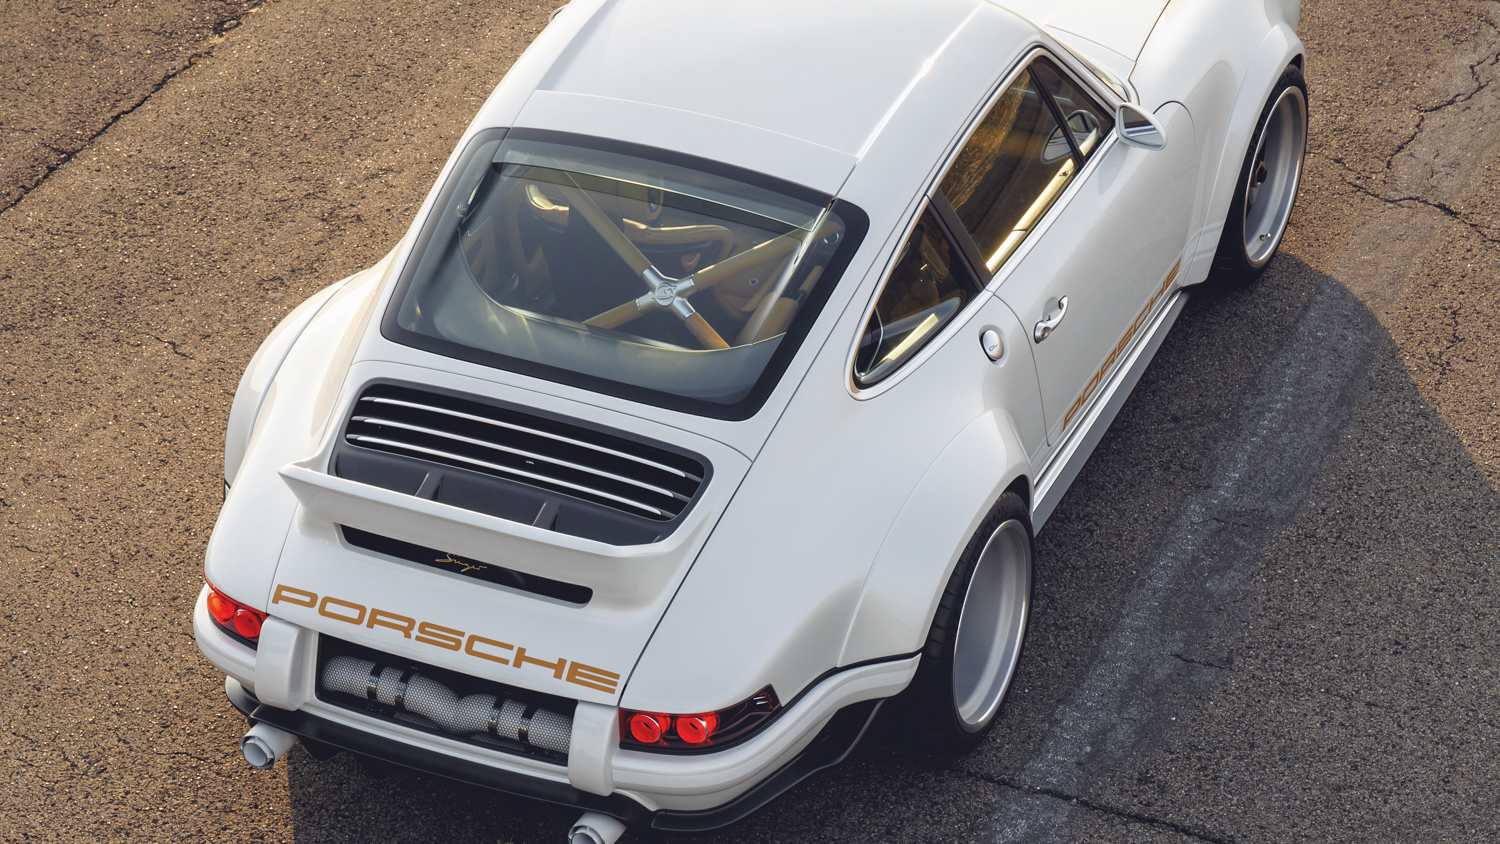 1989 Porsche 911 Reimagined by Singer Vehicle Design